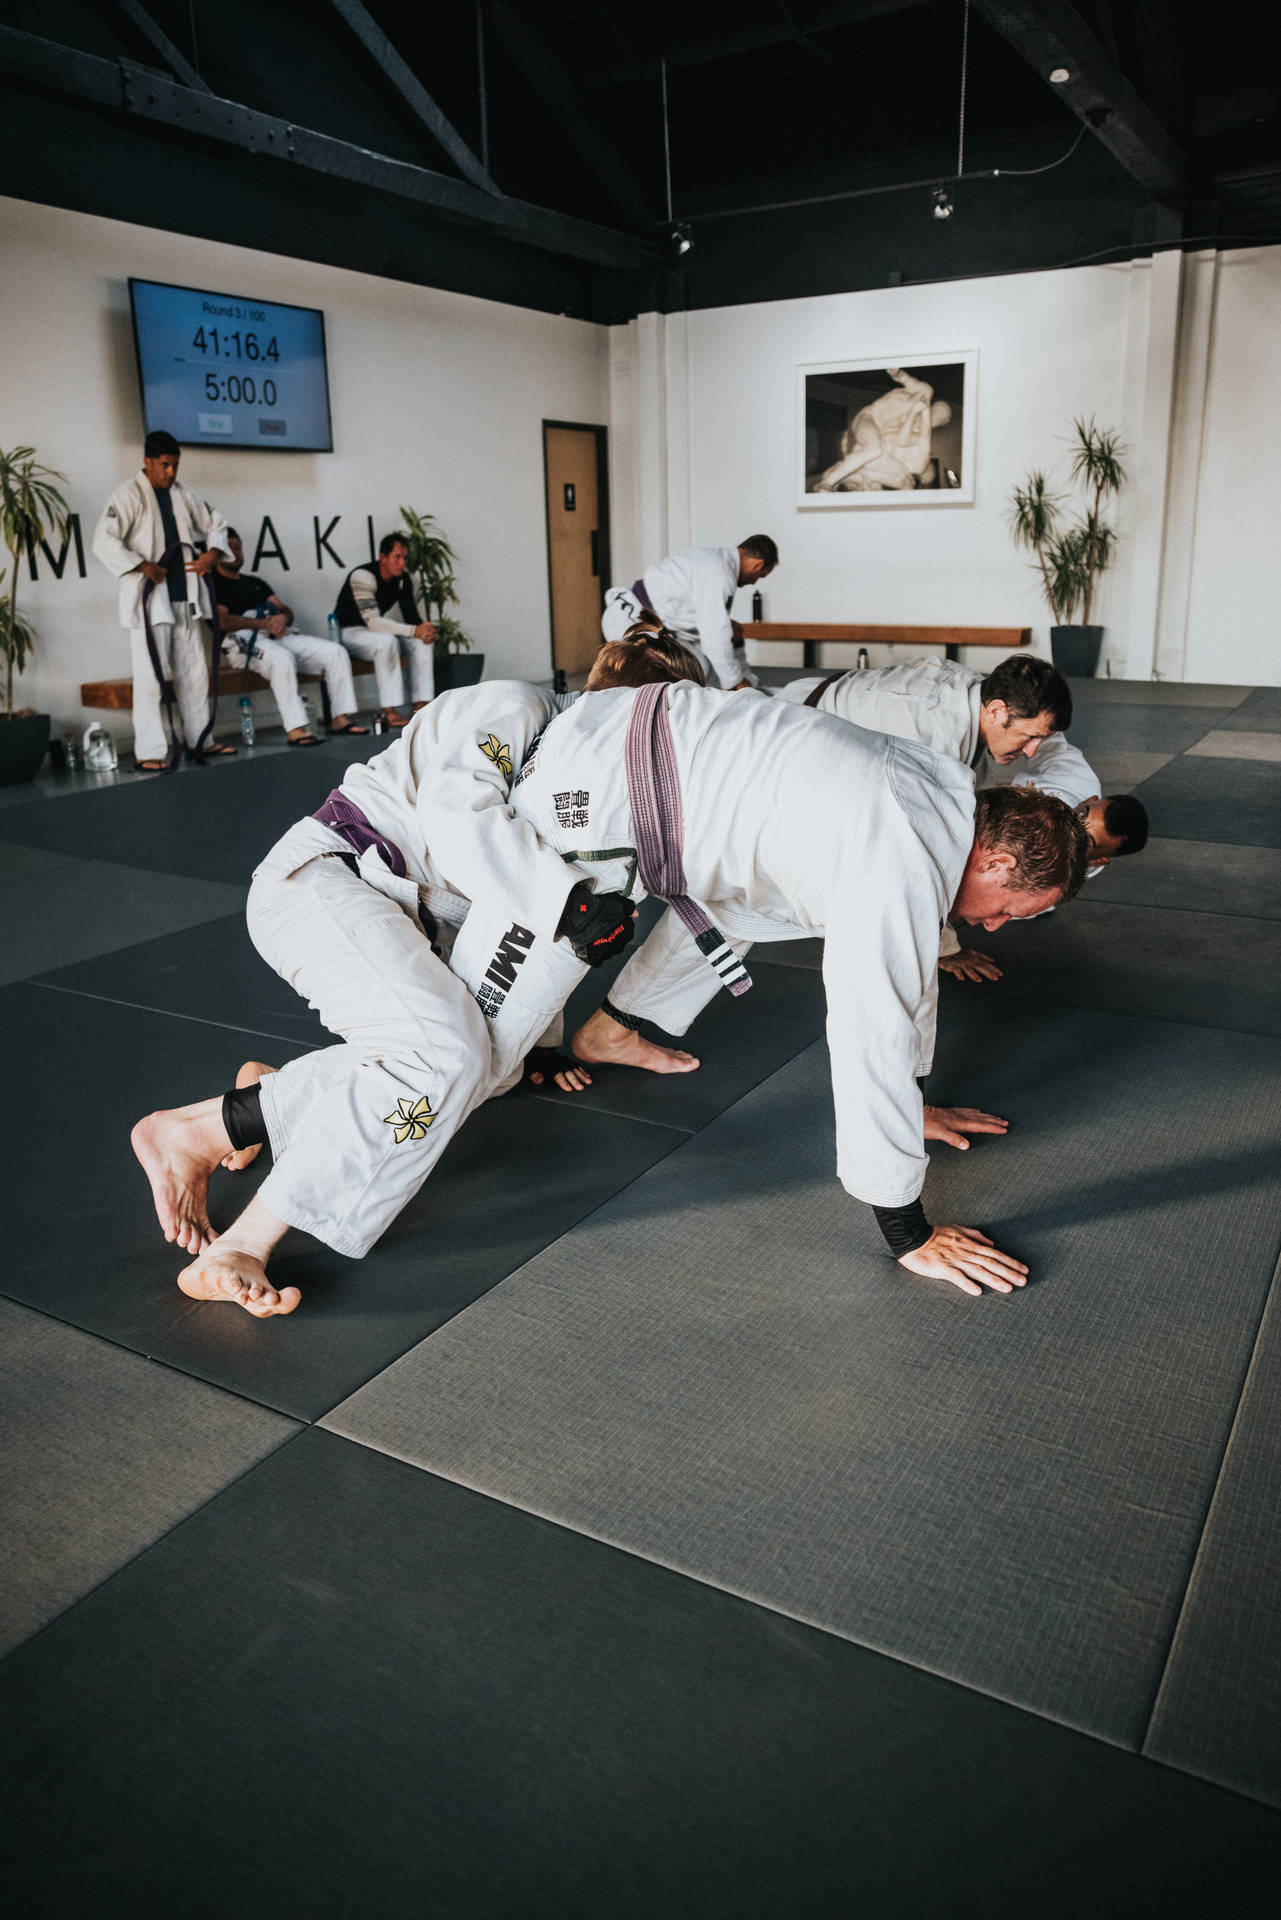 Classic Judo Technique Background